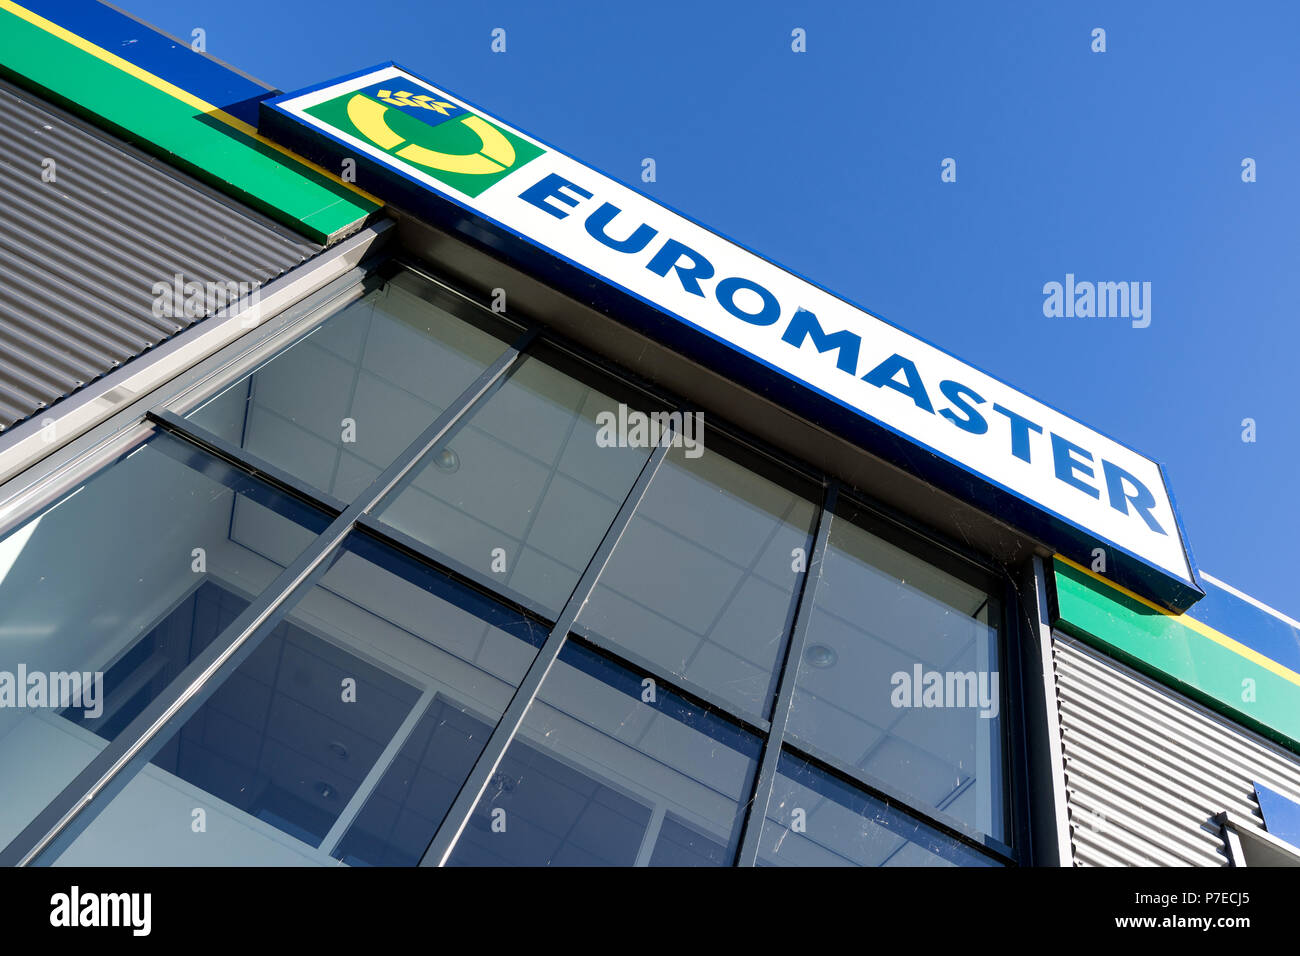 Euromaster Zeichen in der Garage. Euromaster bietet Reifen Service und  Wartung der Fahrzeuge in ganz Europa und ist eine Tochtergesellschaft der  Reifenhersteller Michelin Stockfotografie - Alamy